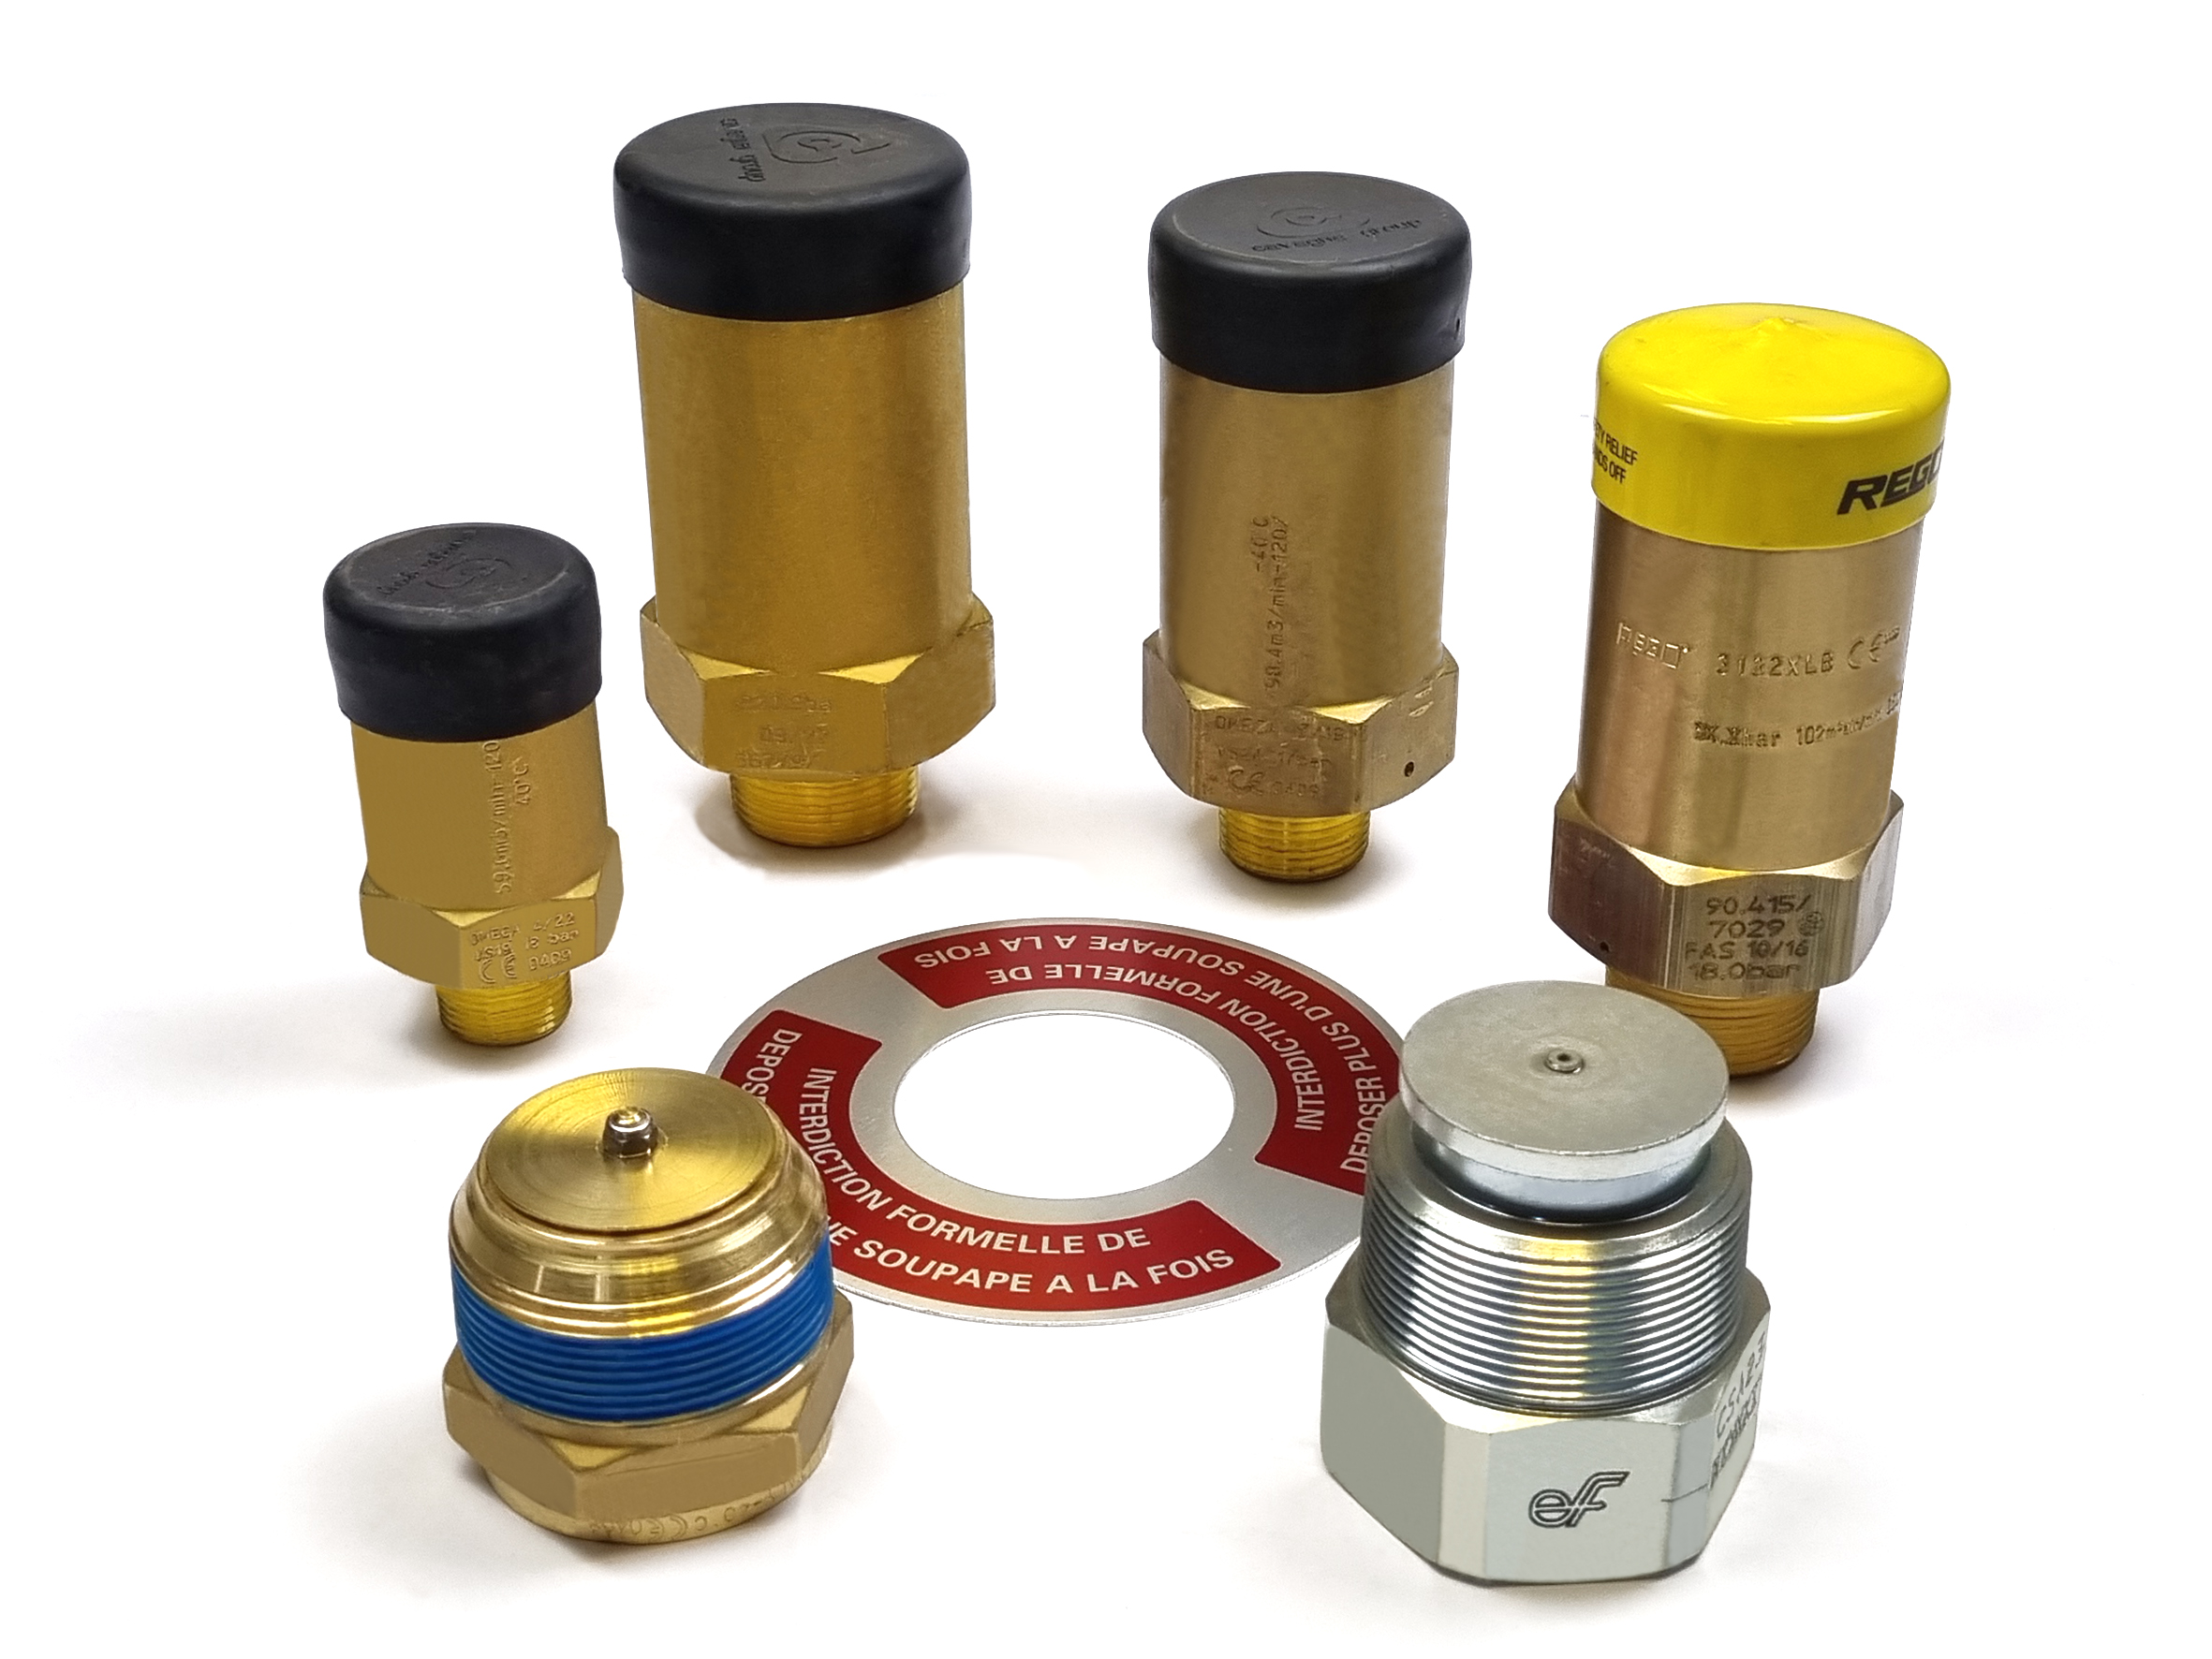 NPT thread pressure relief valves with NPT thread valve holder